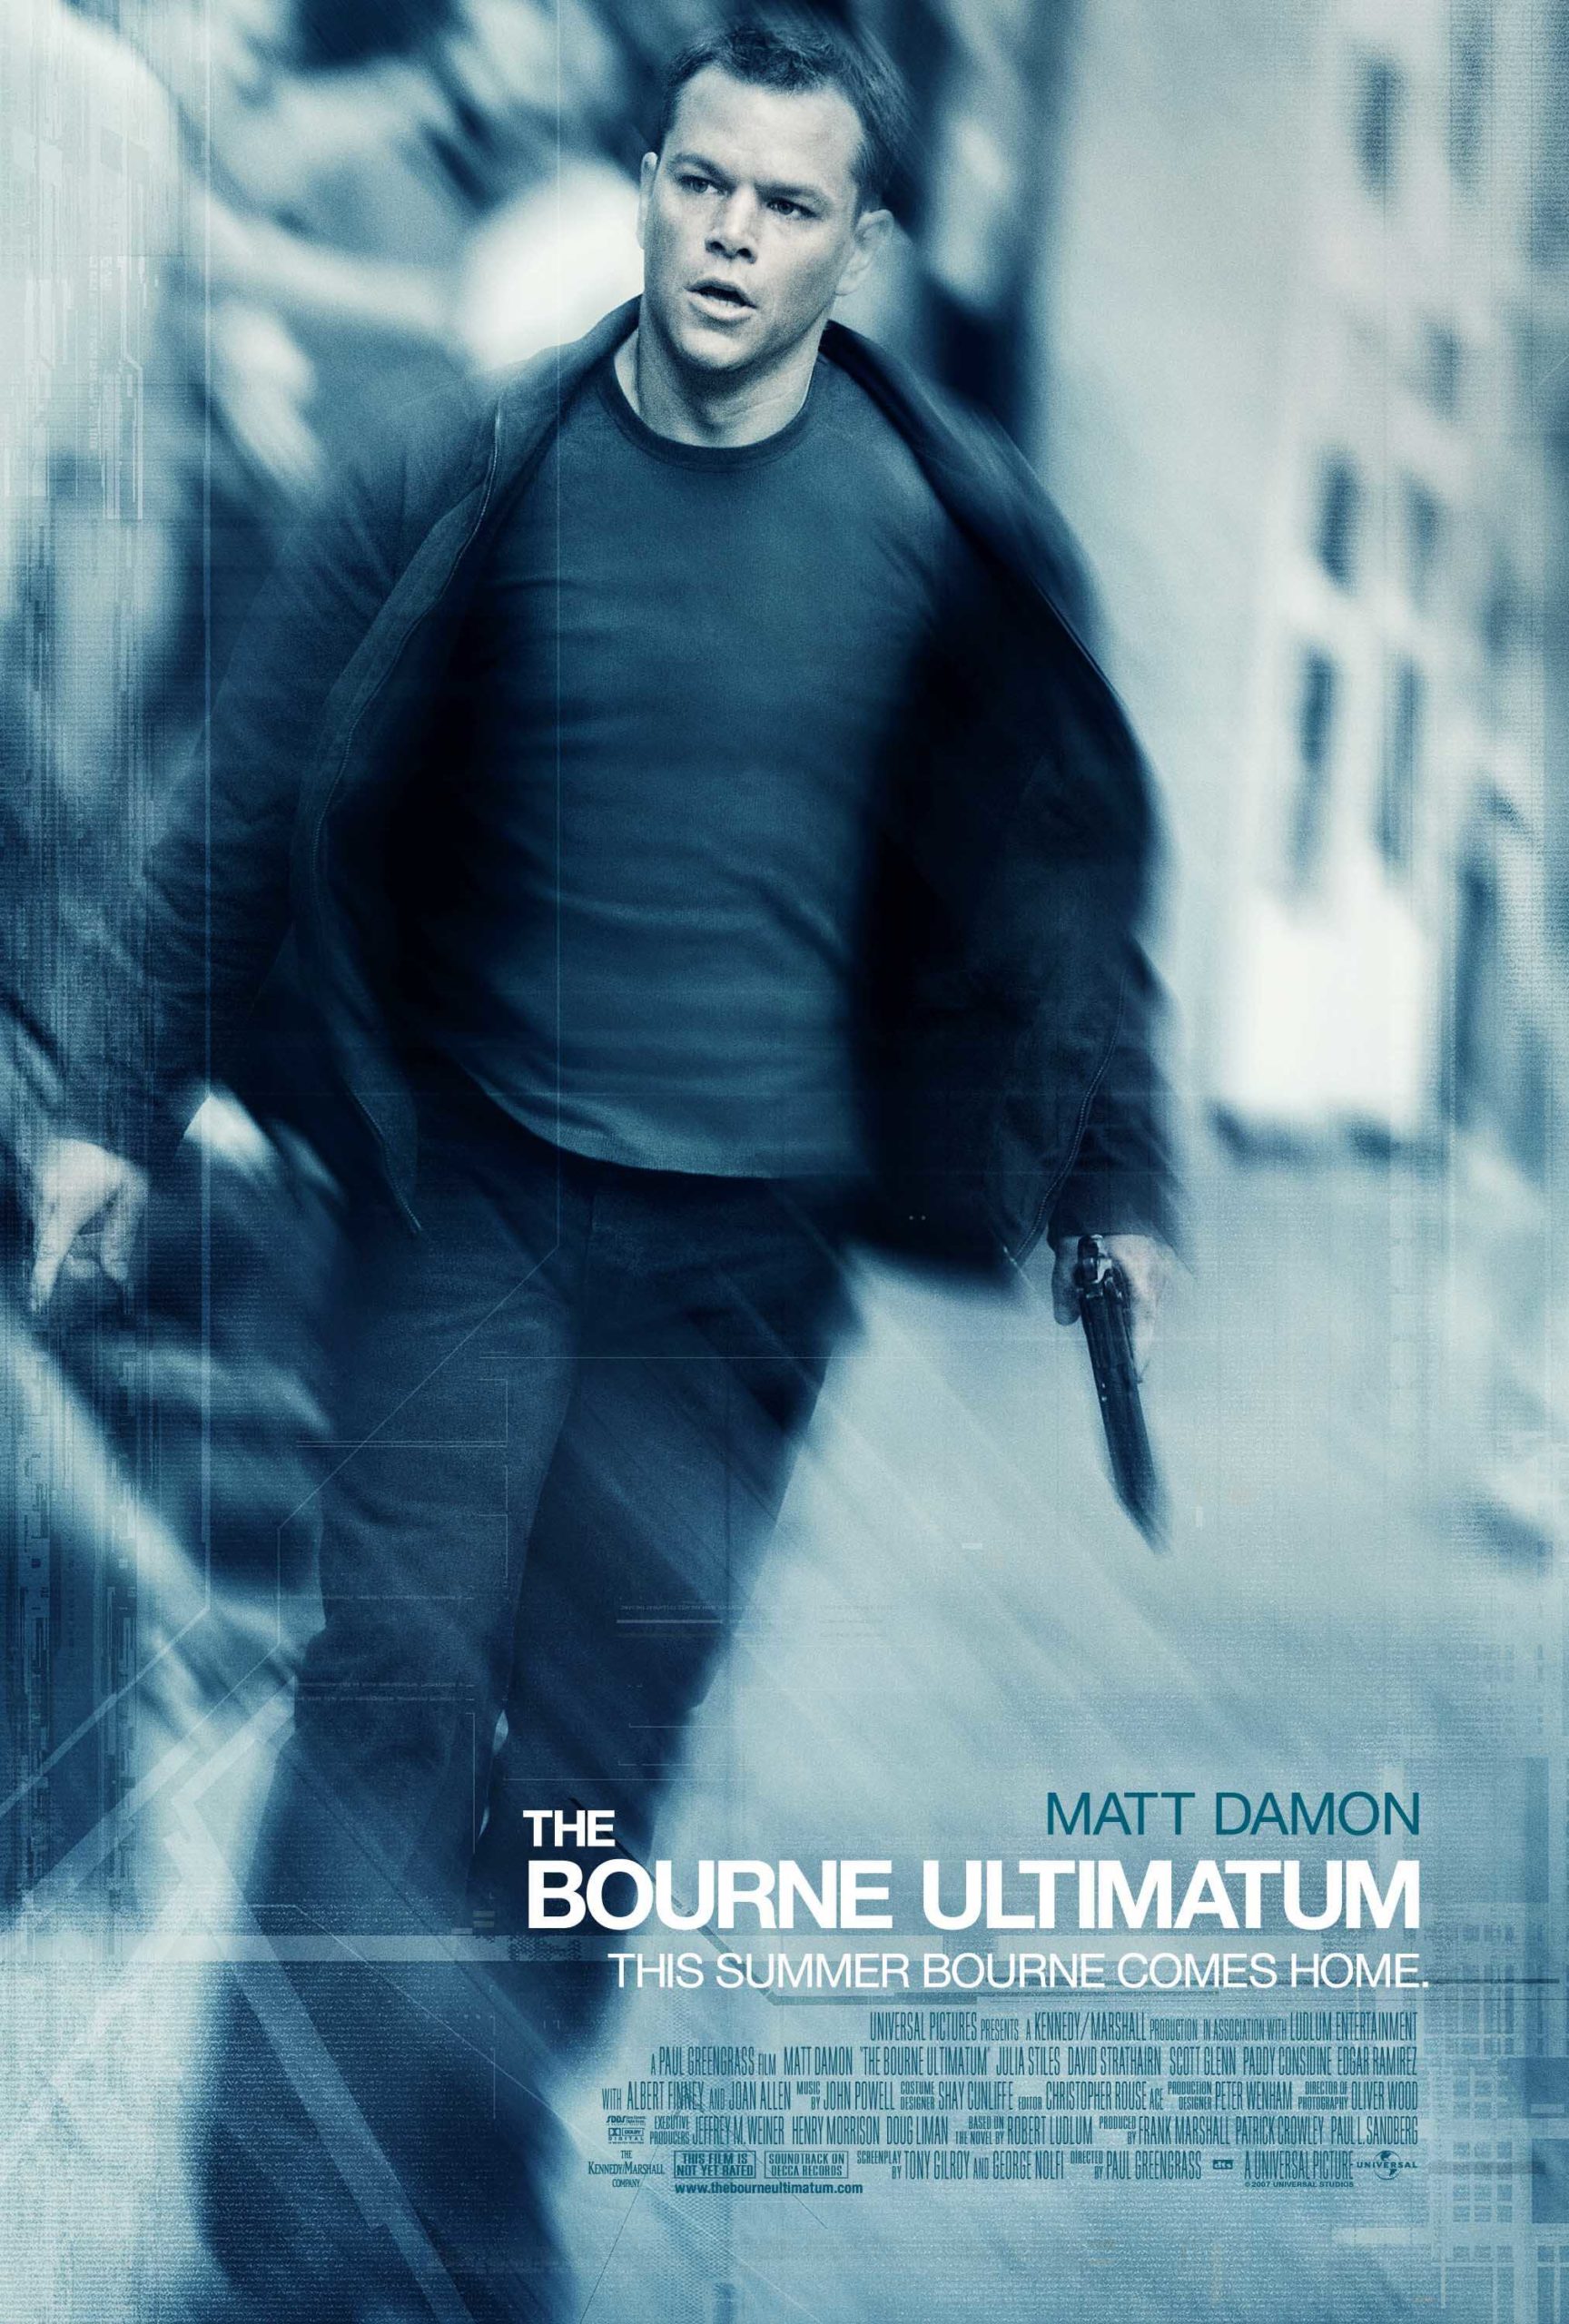 หนังน่าดู : The Bourne Ultimatum ปิดเกมล่าจารชน คนอันตราย